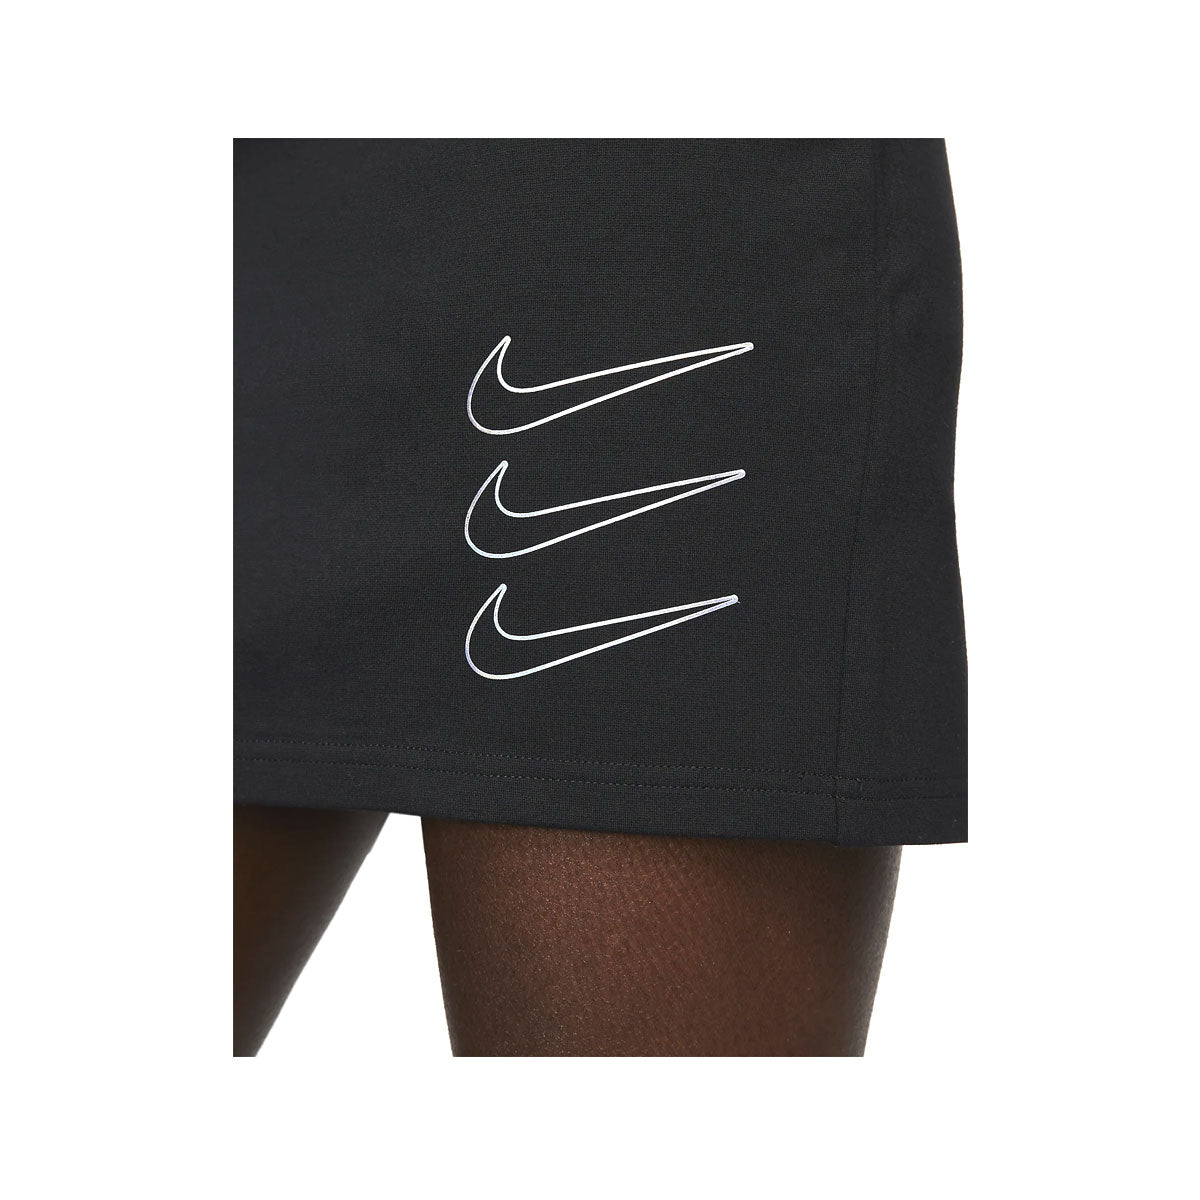 Nike Women's Sportswear Graphic Long-Sleeve Dress - KickzStore